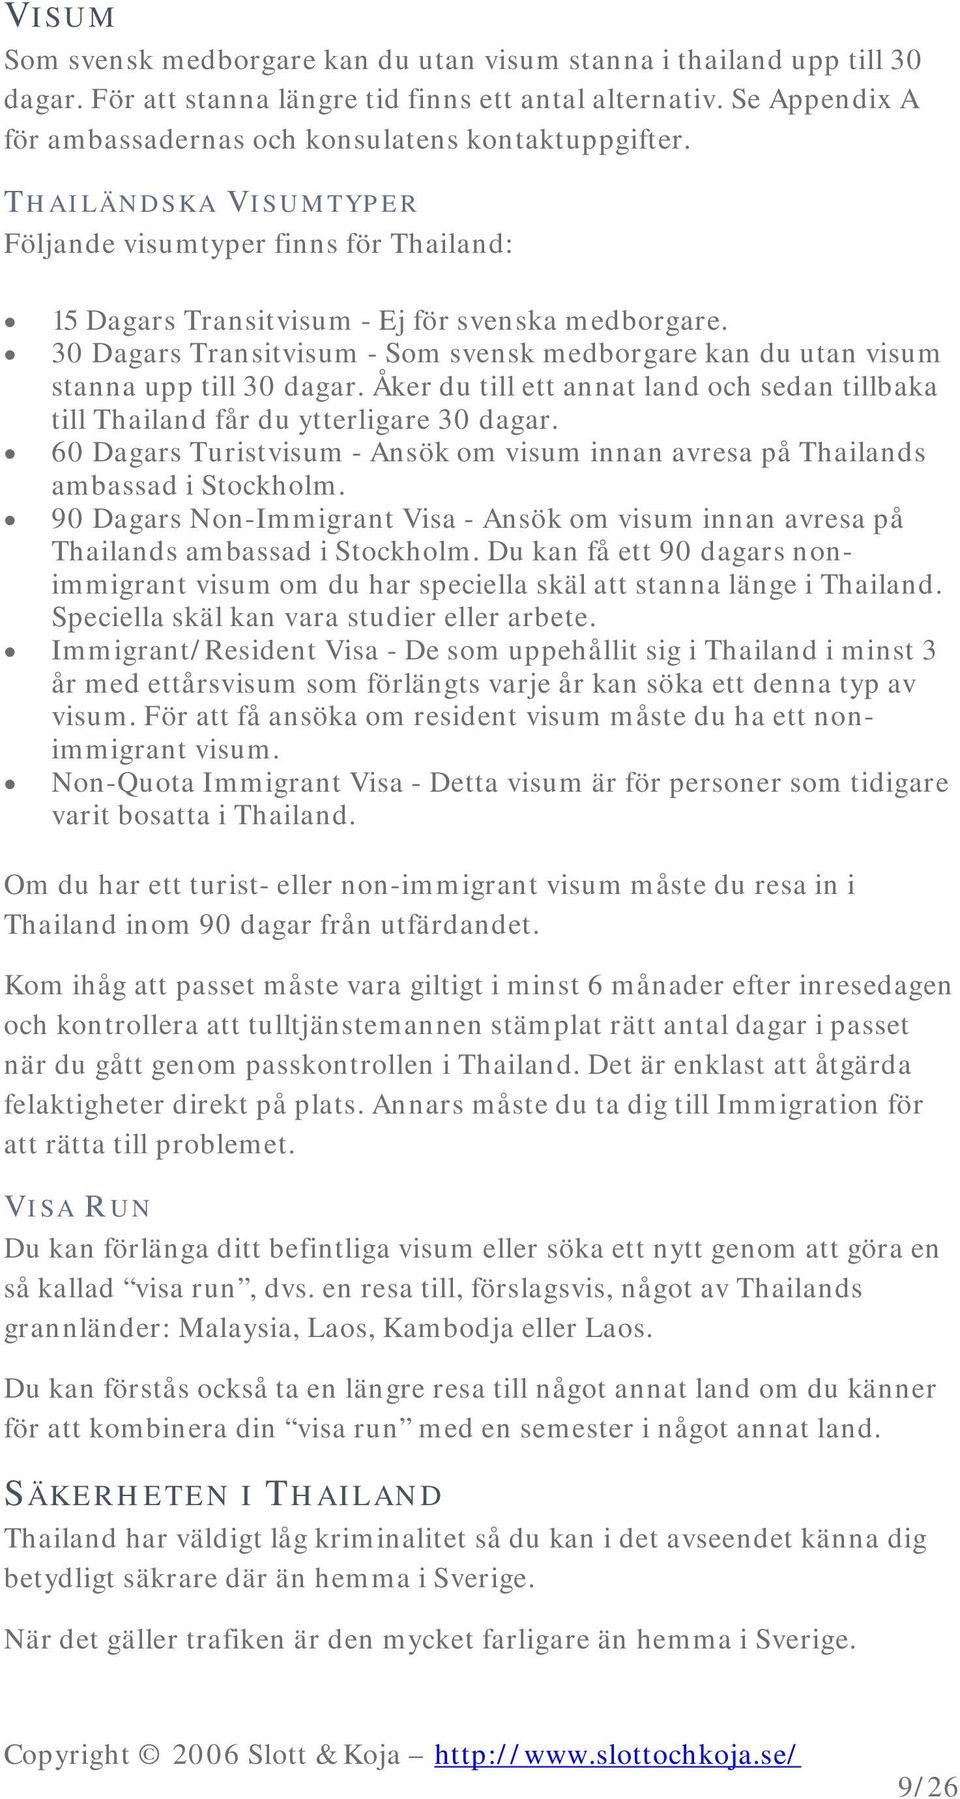 30 Dagars Transitvisum - Som svensk medborgare kan du utan visum stanna upp till 30 dagar. Åker du till ett annat land och sedan tillbaka till Thailand får du ytterligare 30 dagar.